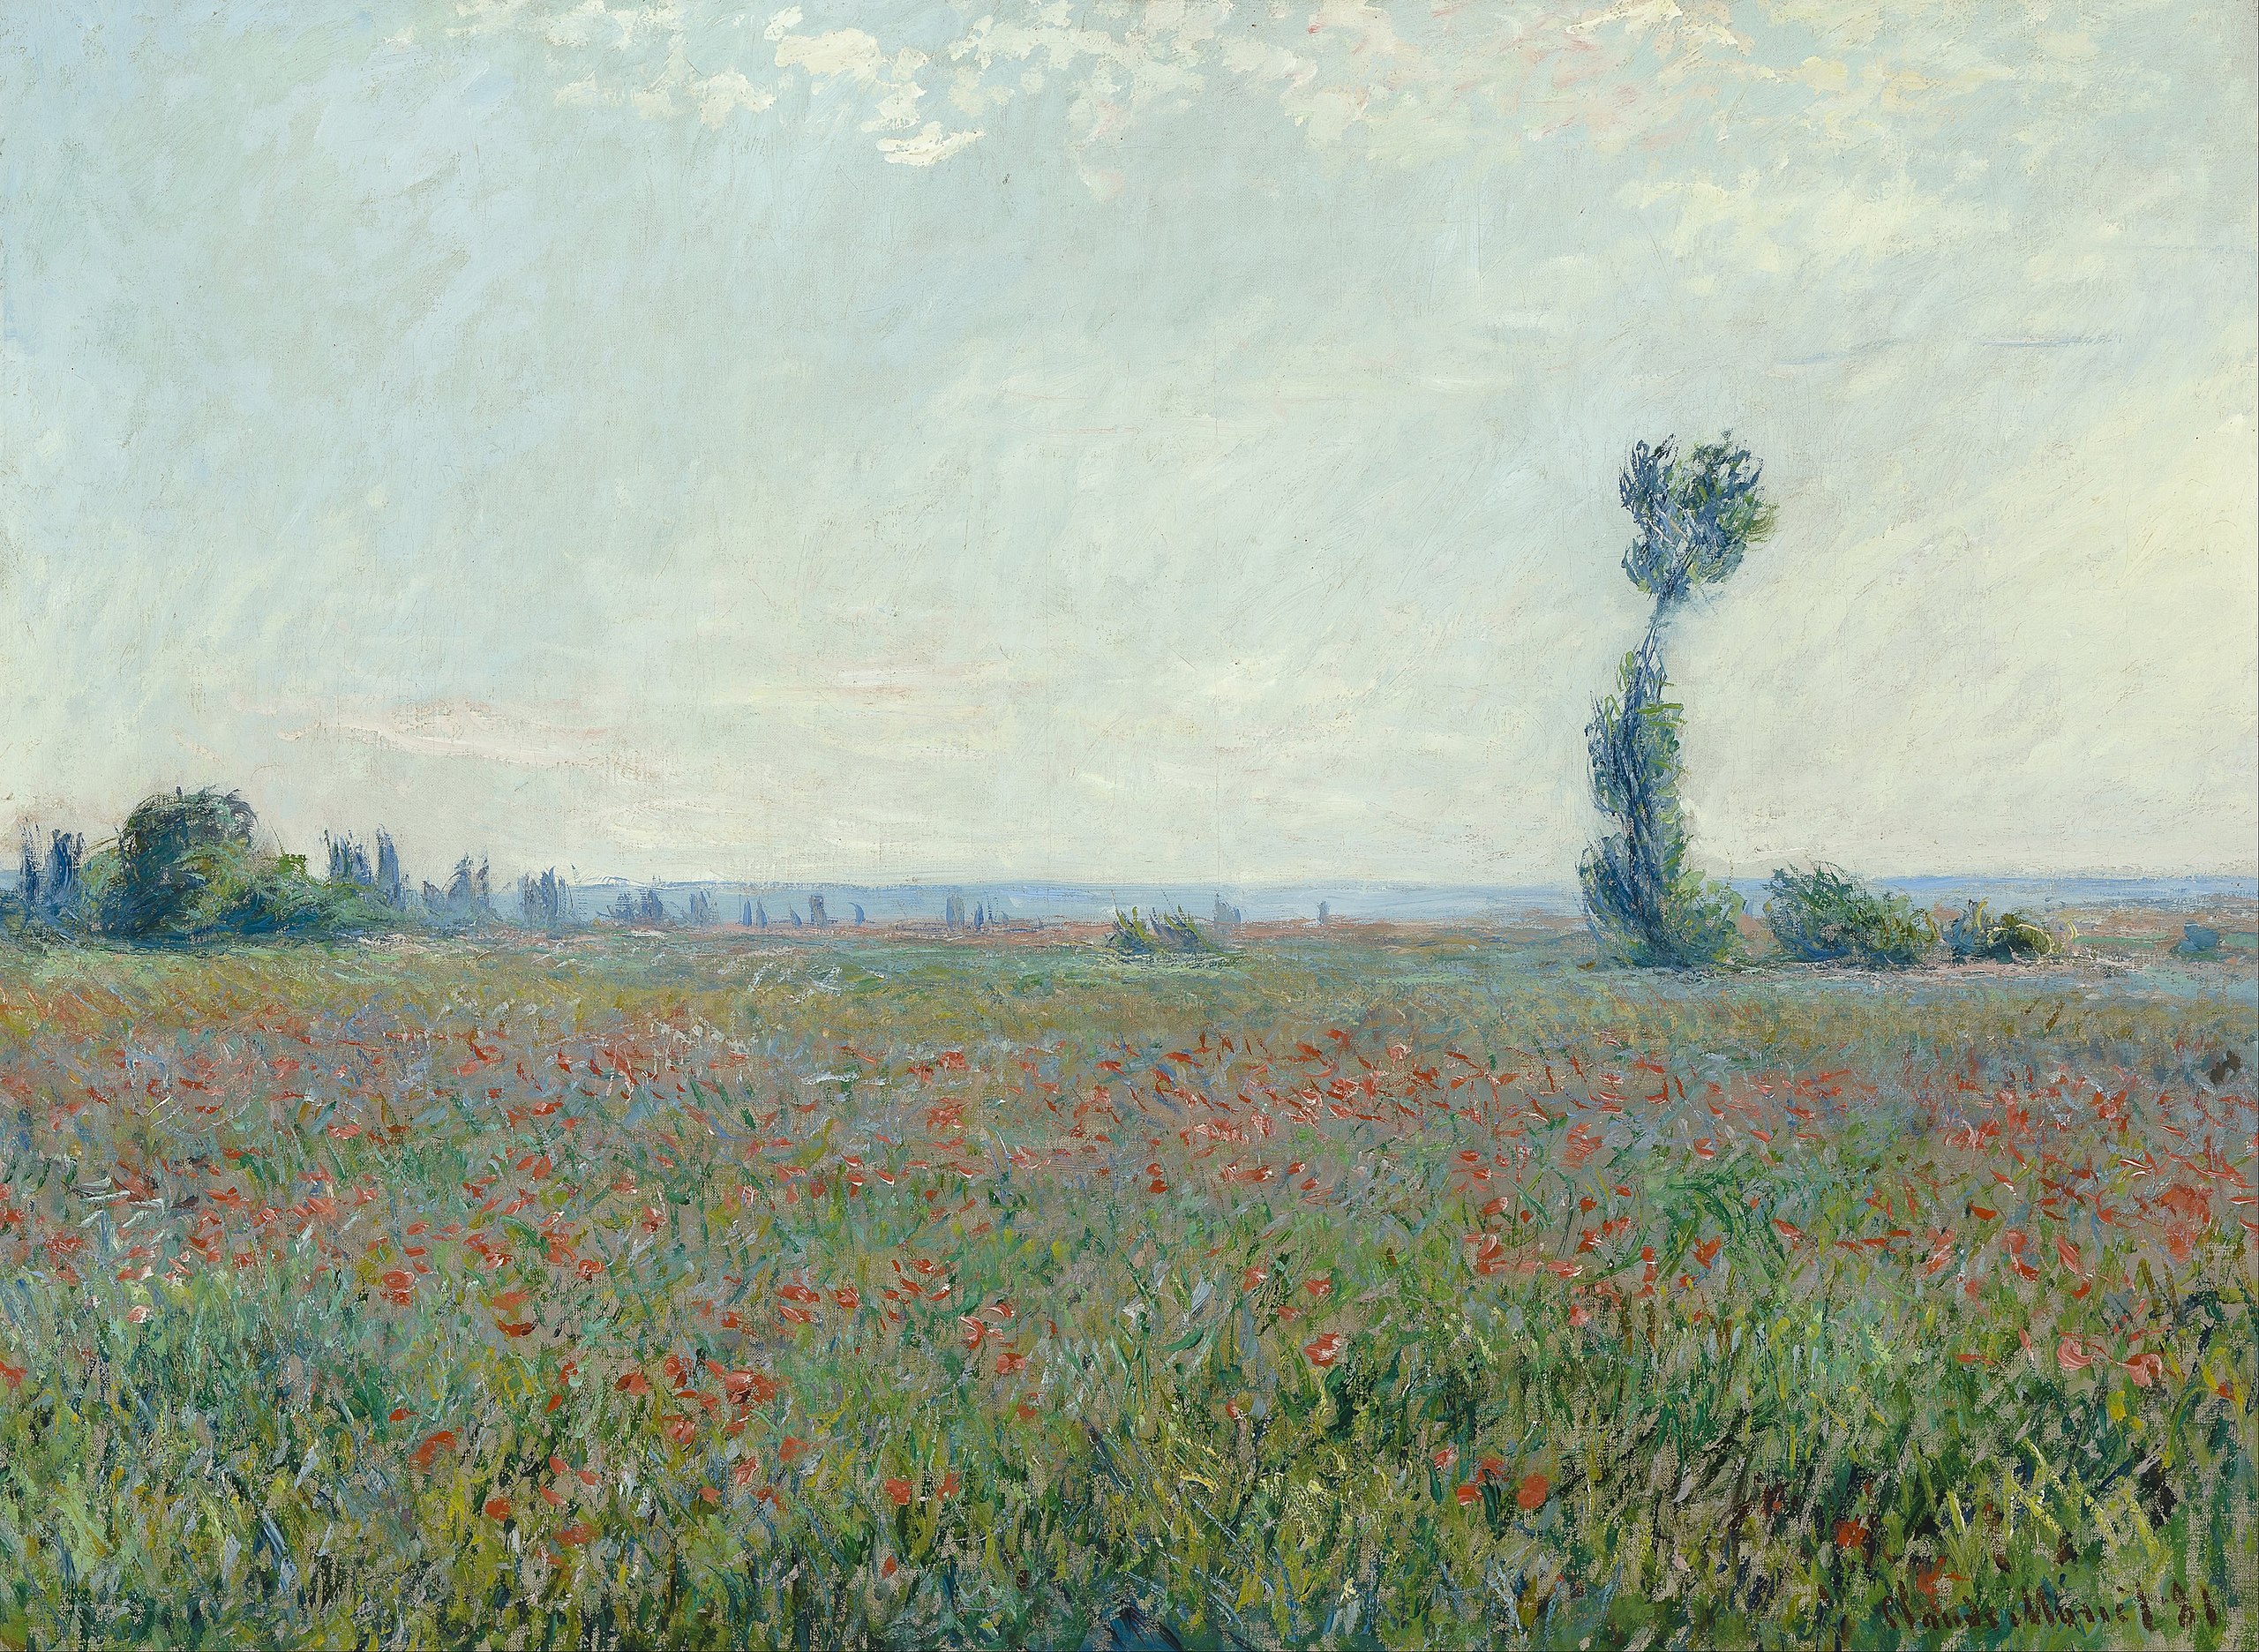 양귀비 꽃밭 by Claude Monet - 1881 - 79 x 58 cm 